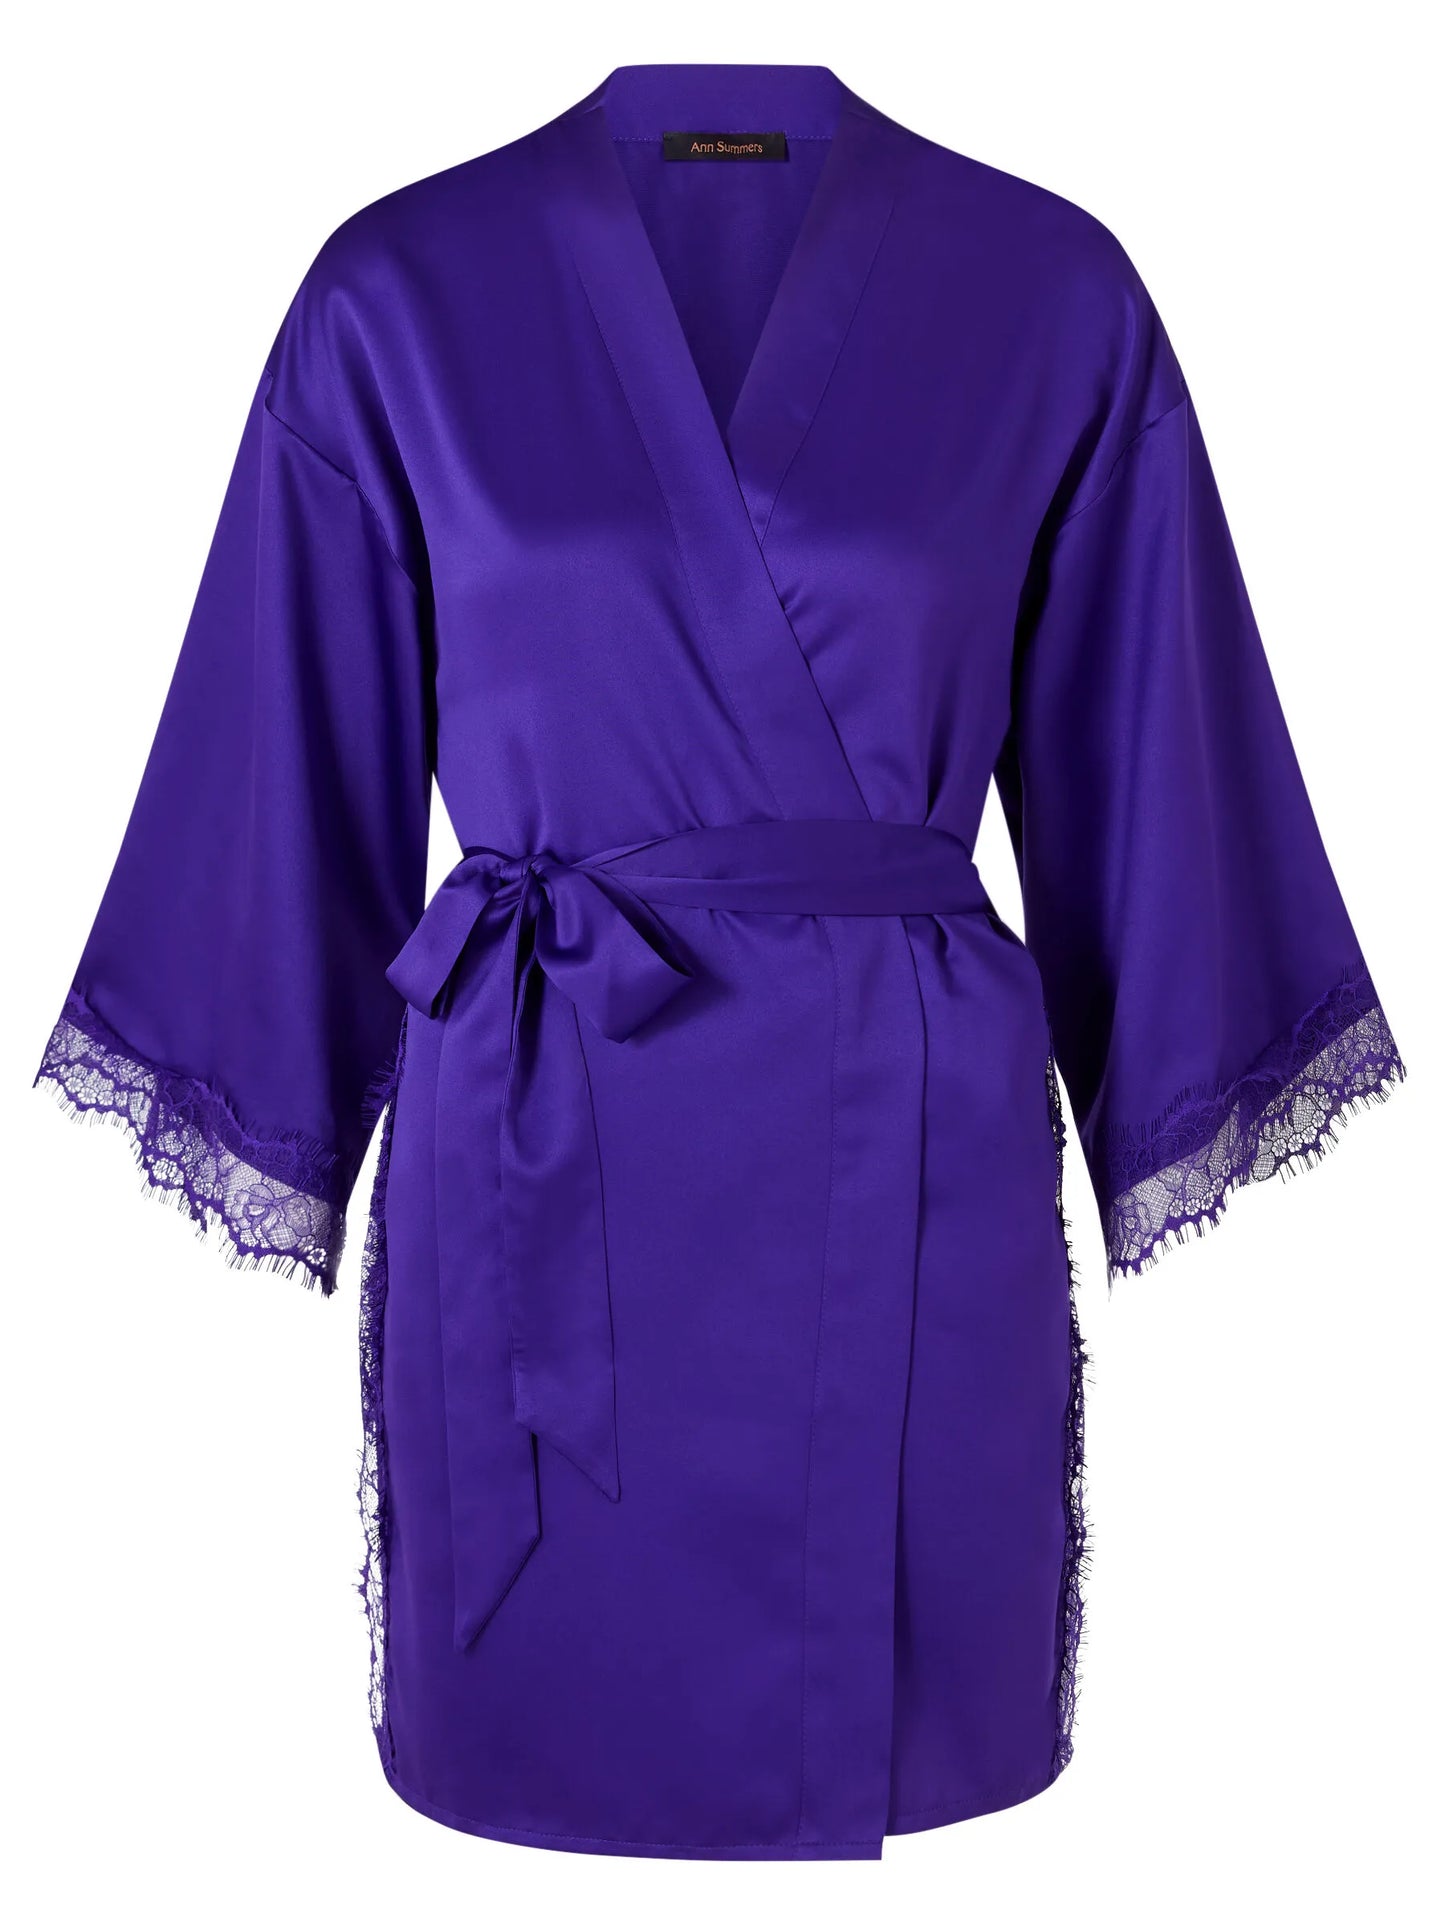 Cherryann Robe Dark Purple From Ann Summers, Image 04